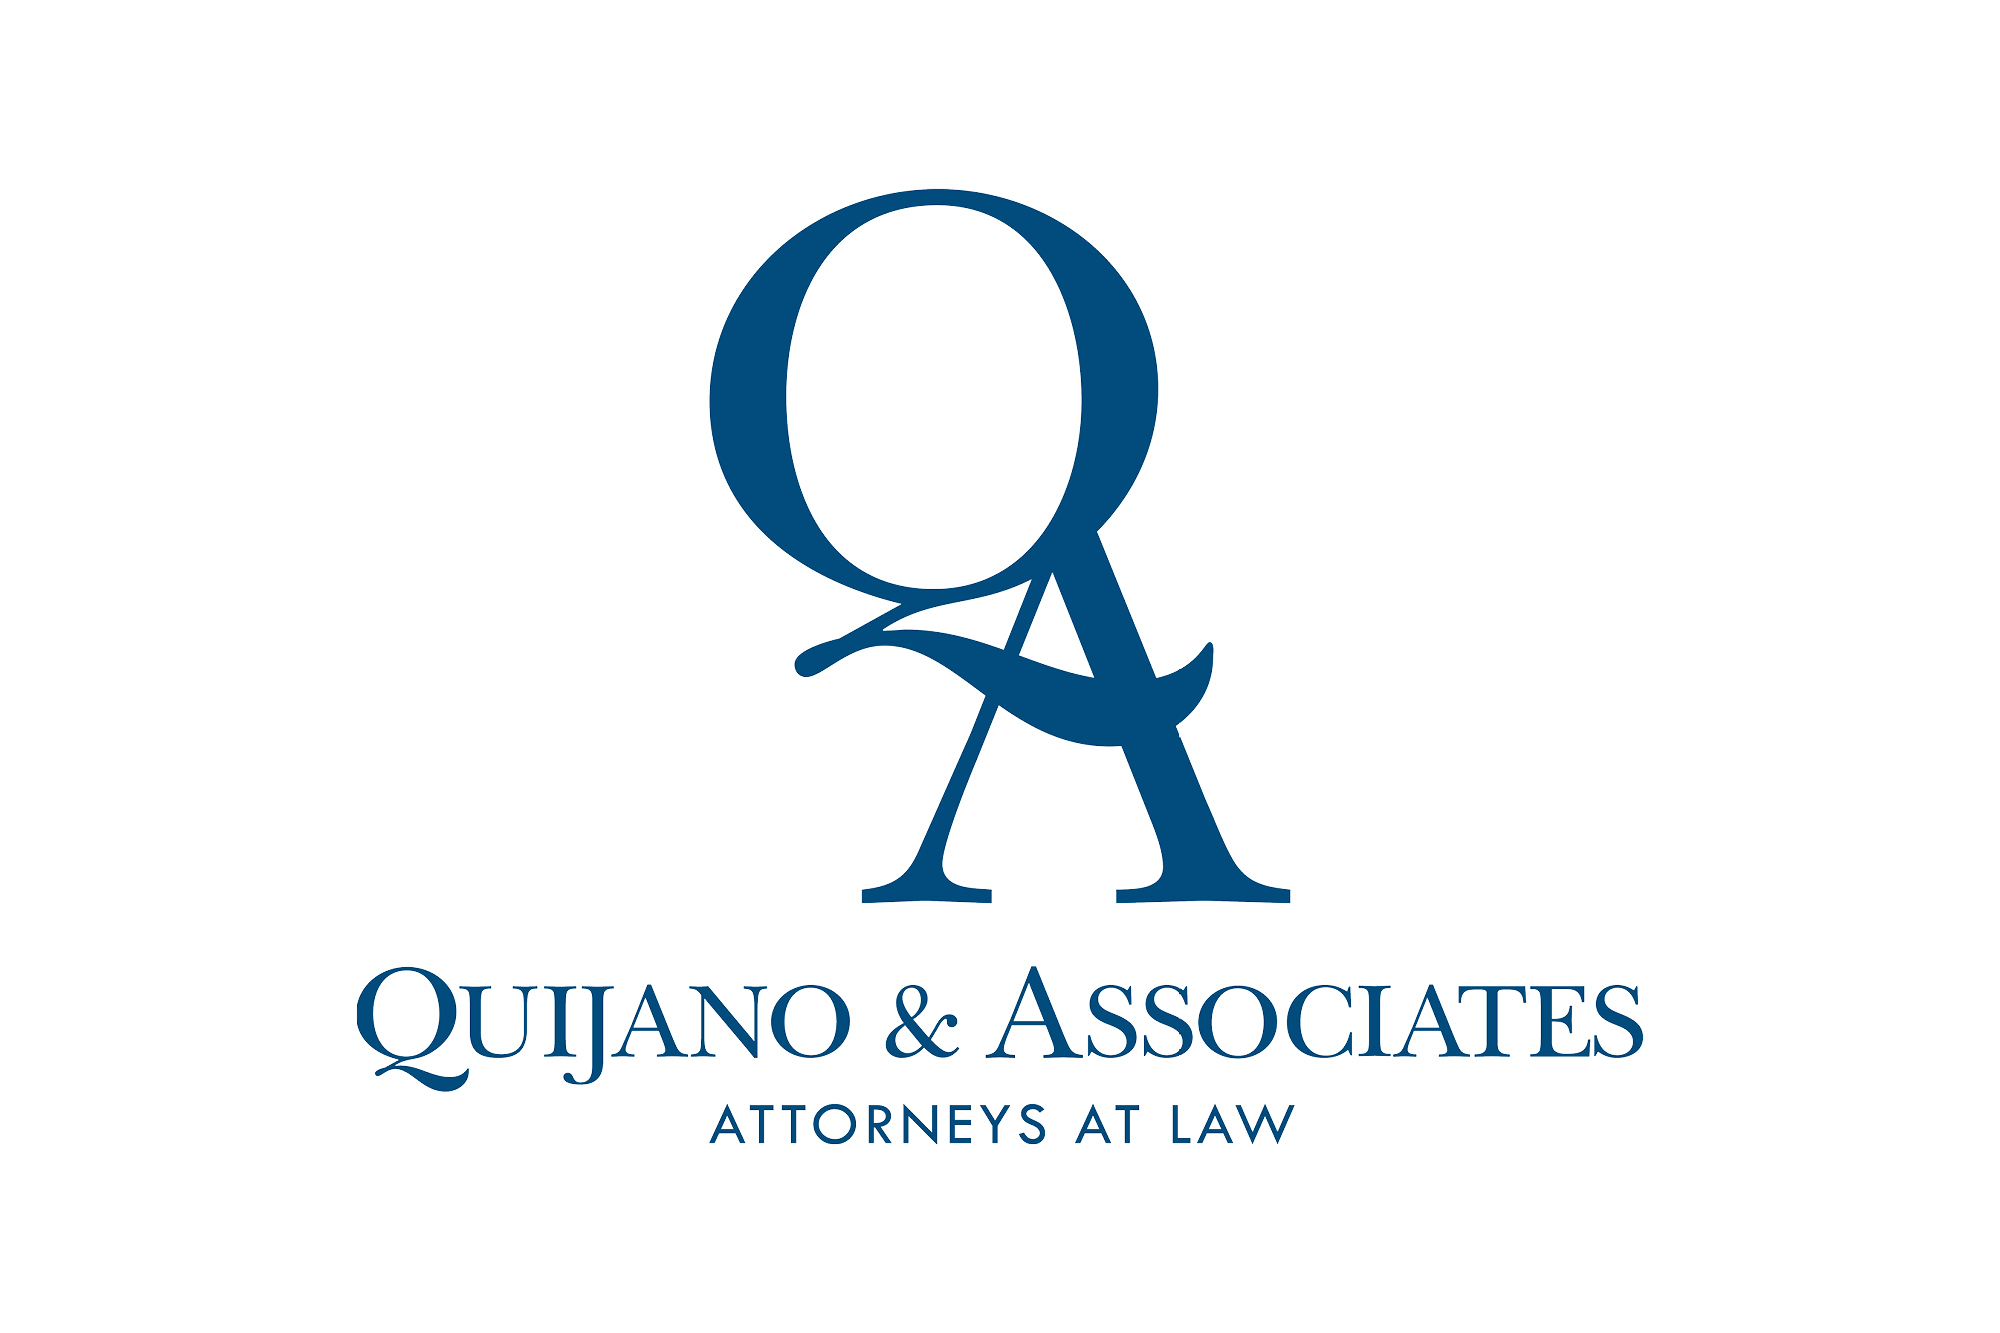 Quinjano & Associates